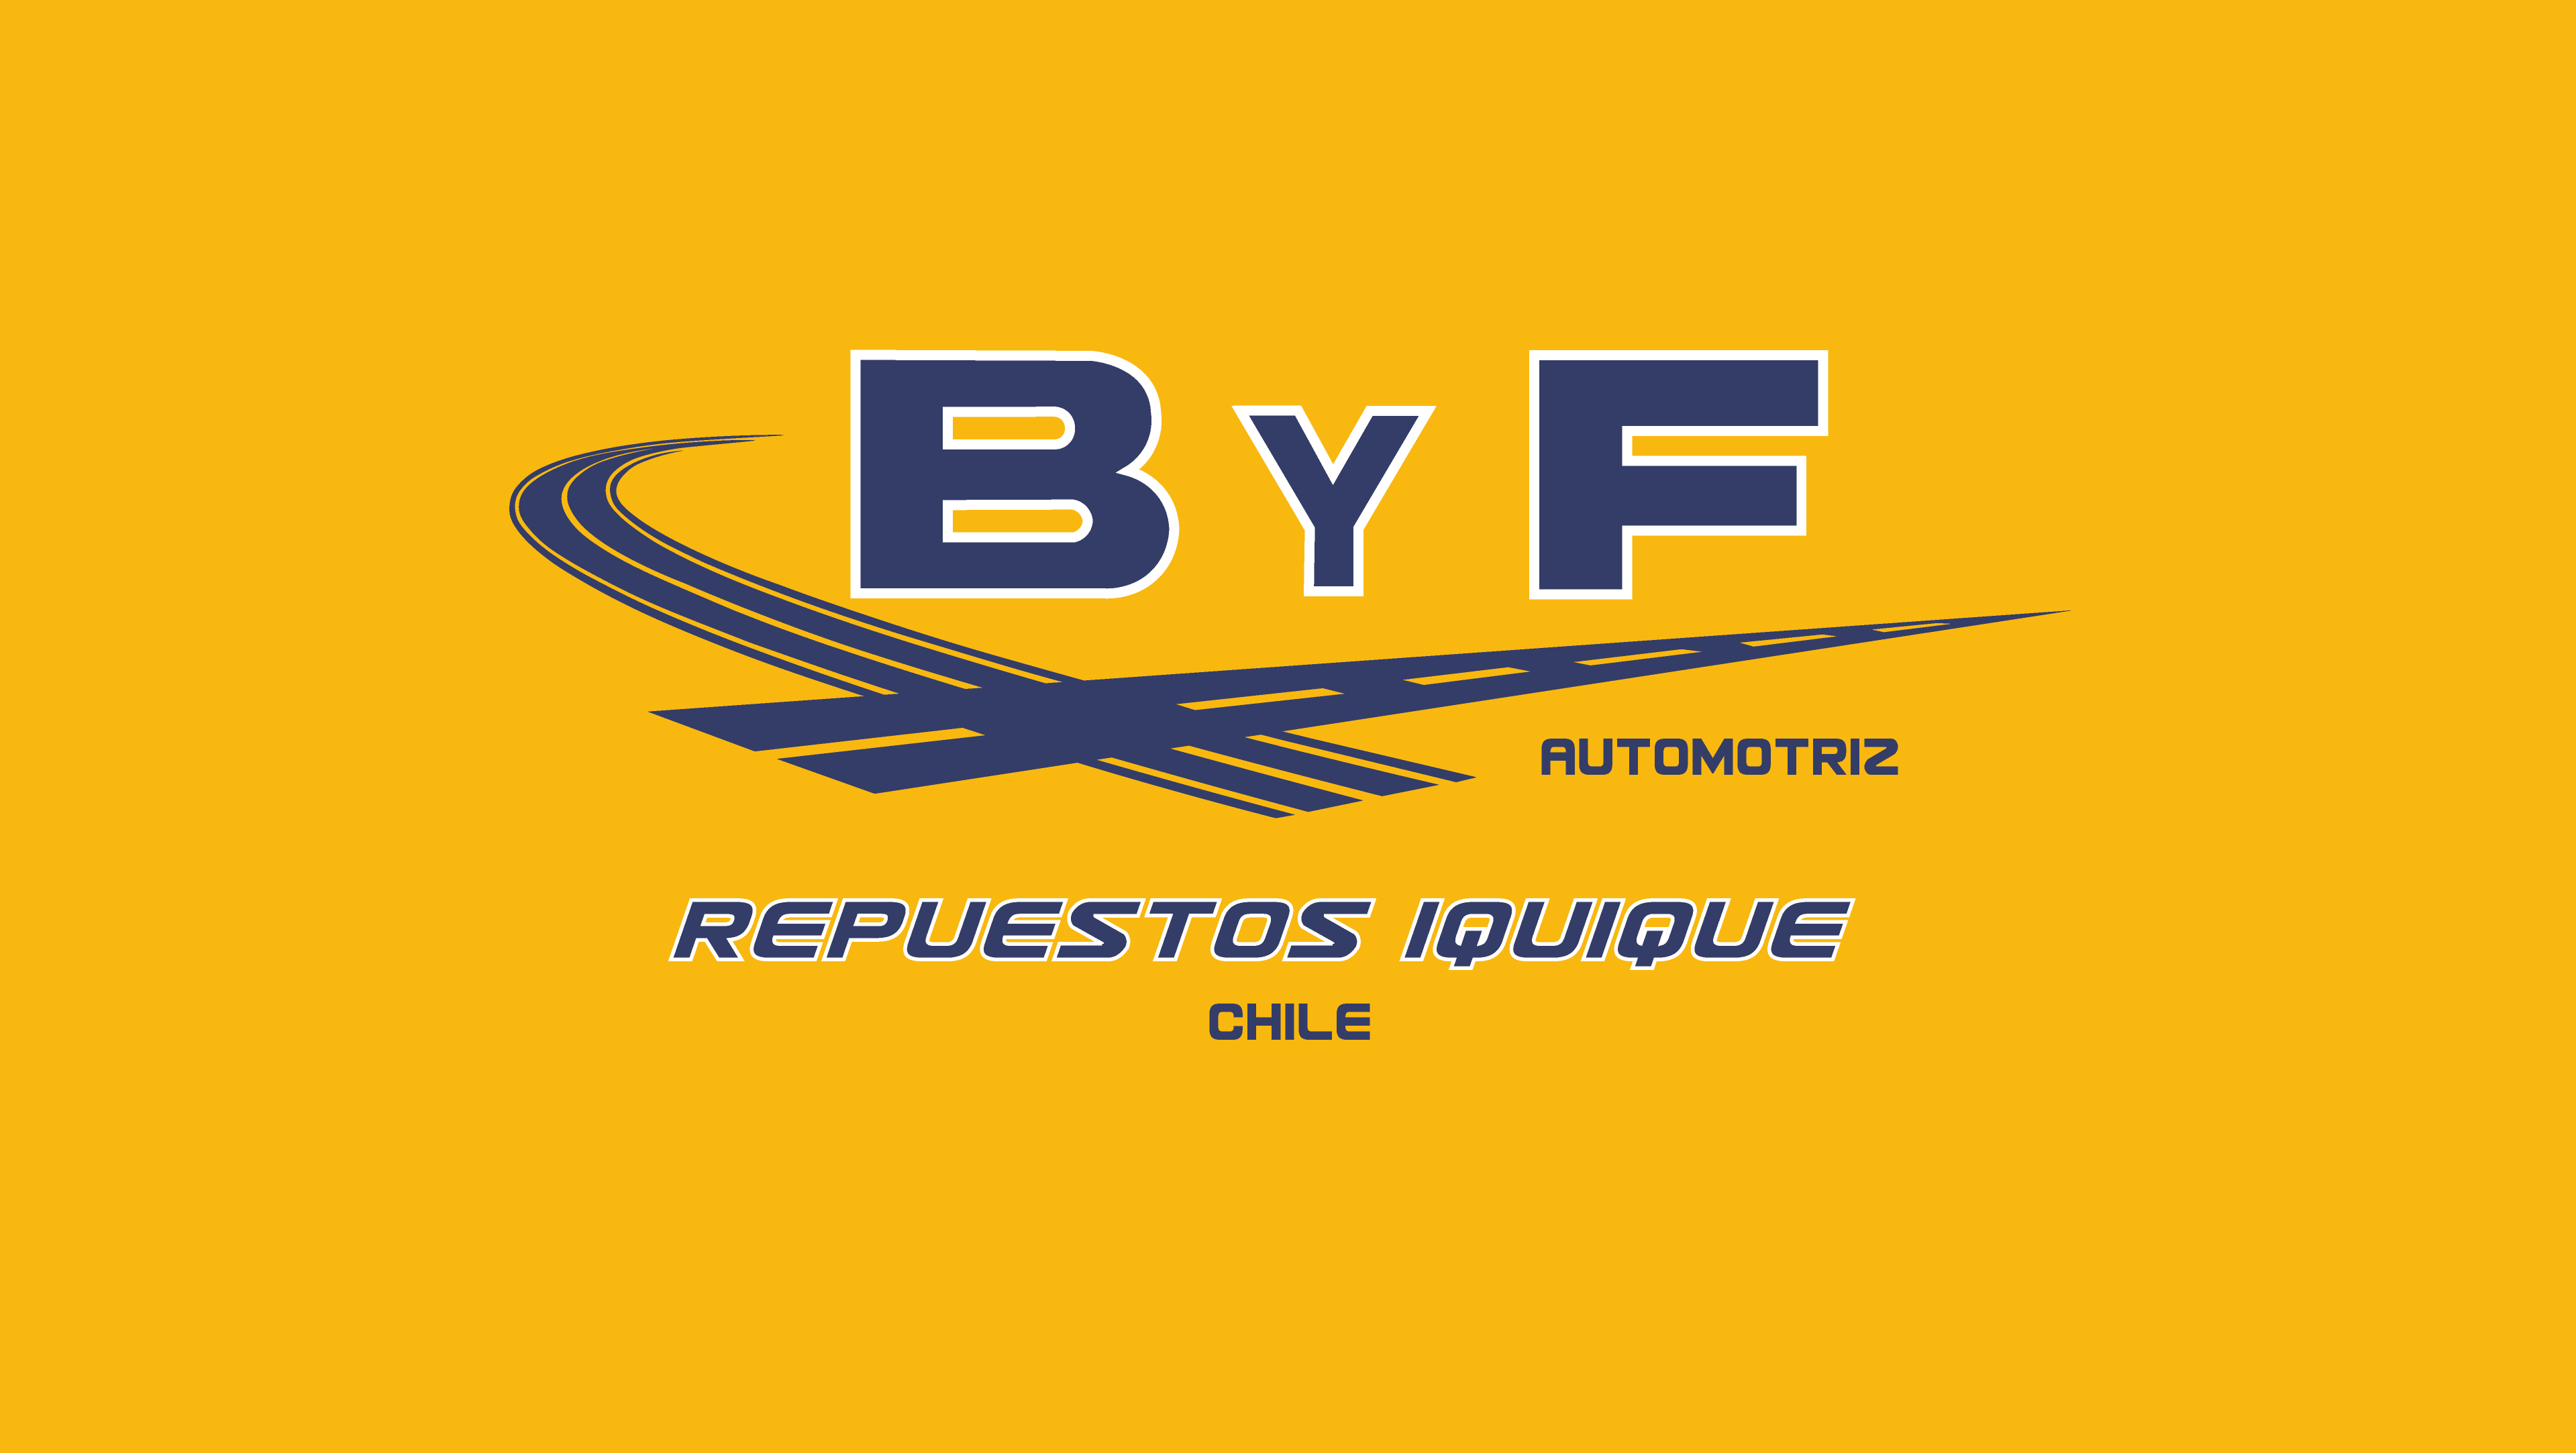 ByF Repuestos Iquique